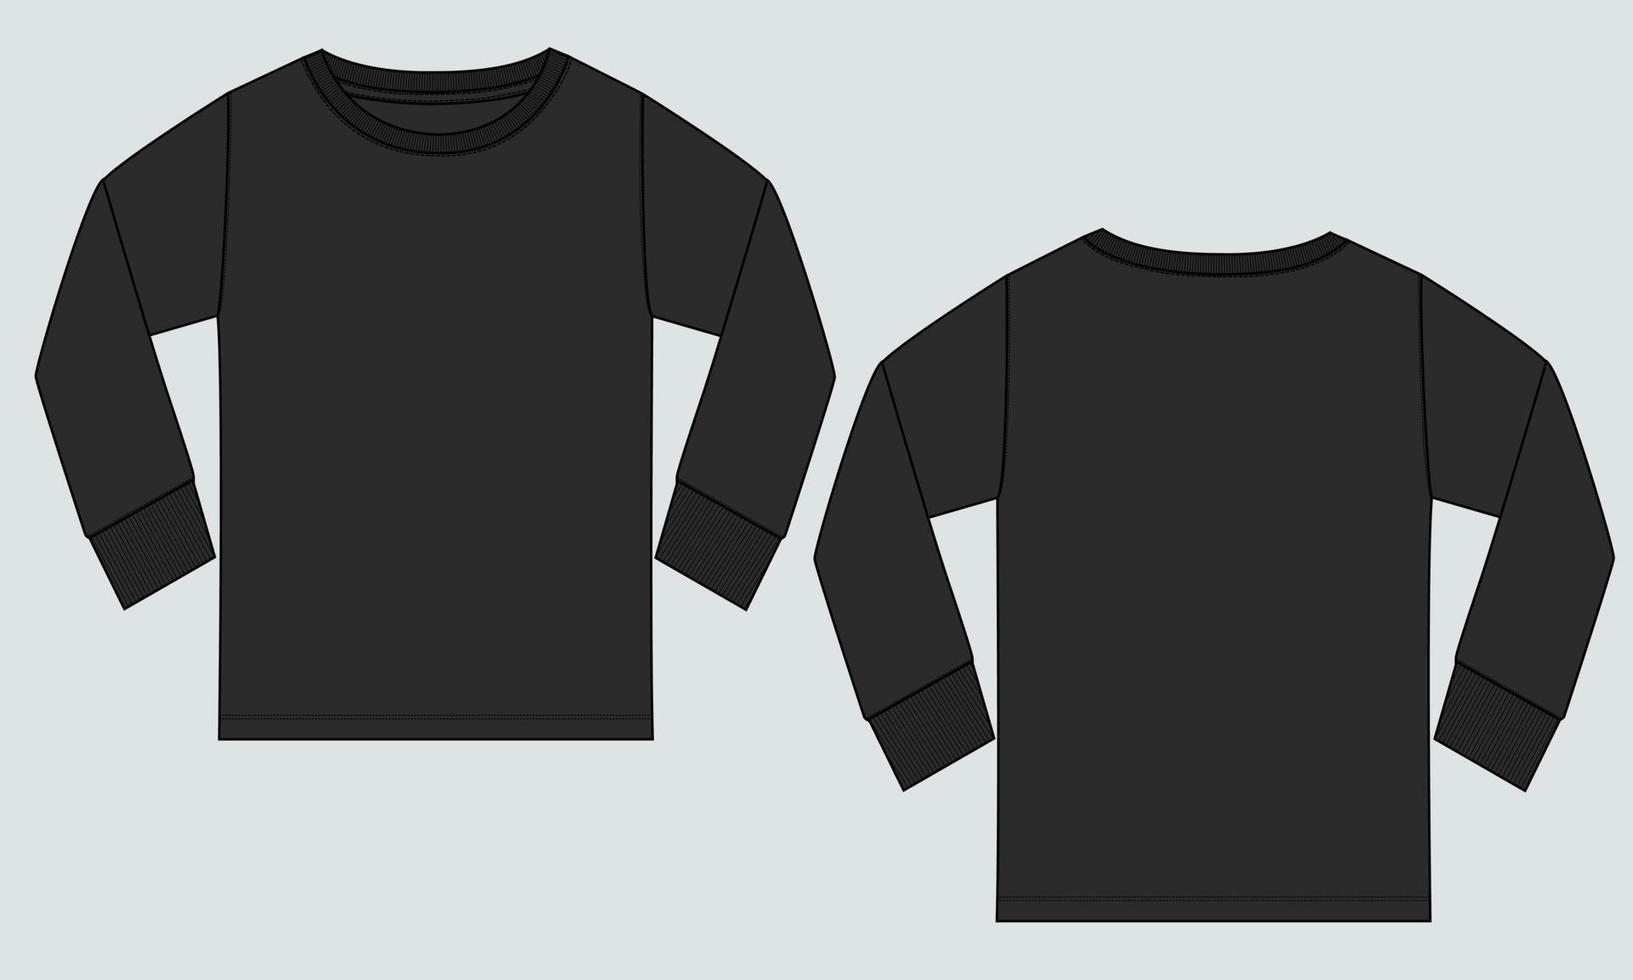 Langarm-T-Shirt technische Mode flache Skizze Vektor Illustration Vorlage Vorder- und Rückansichten.